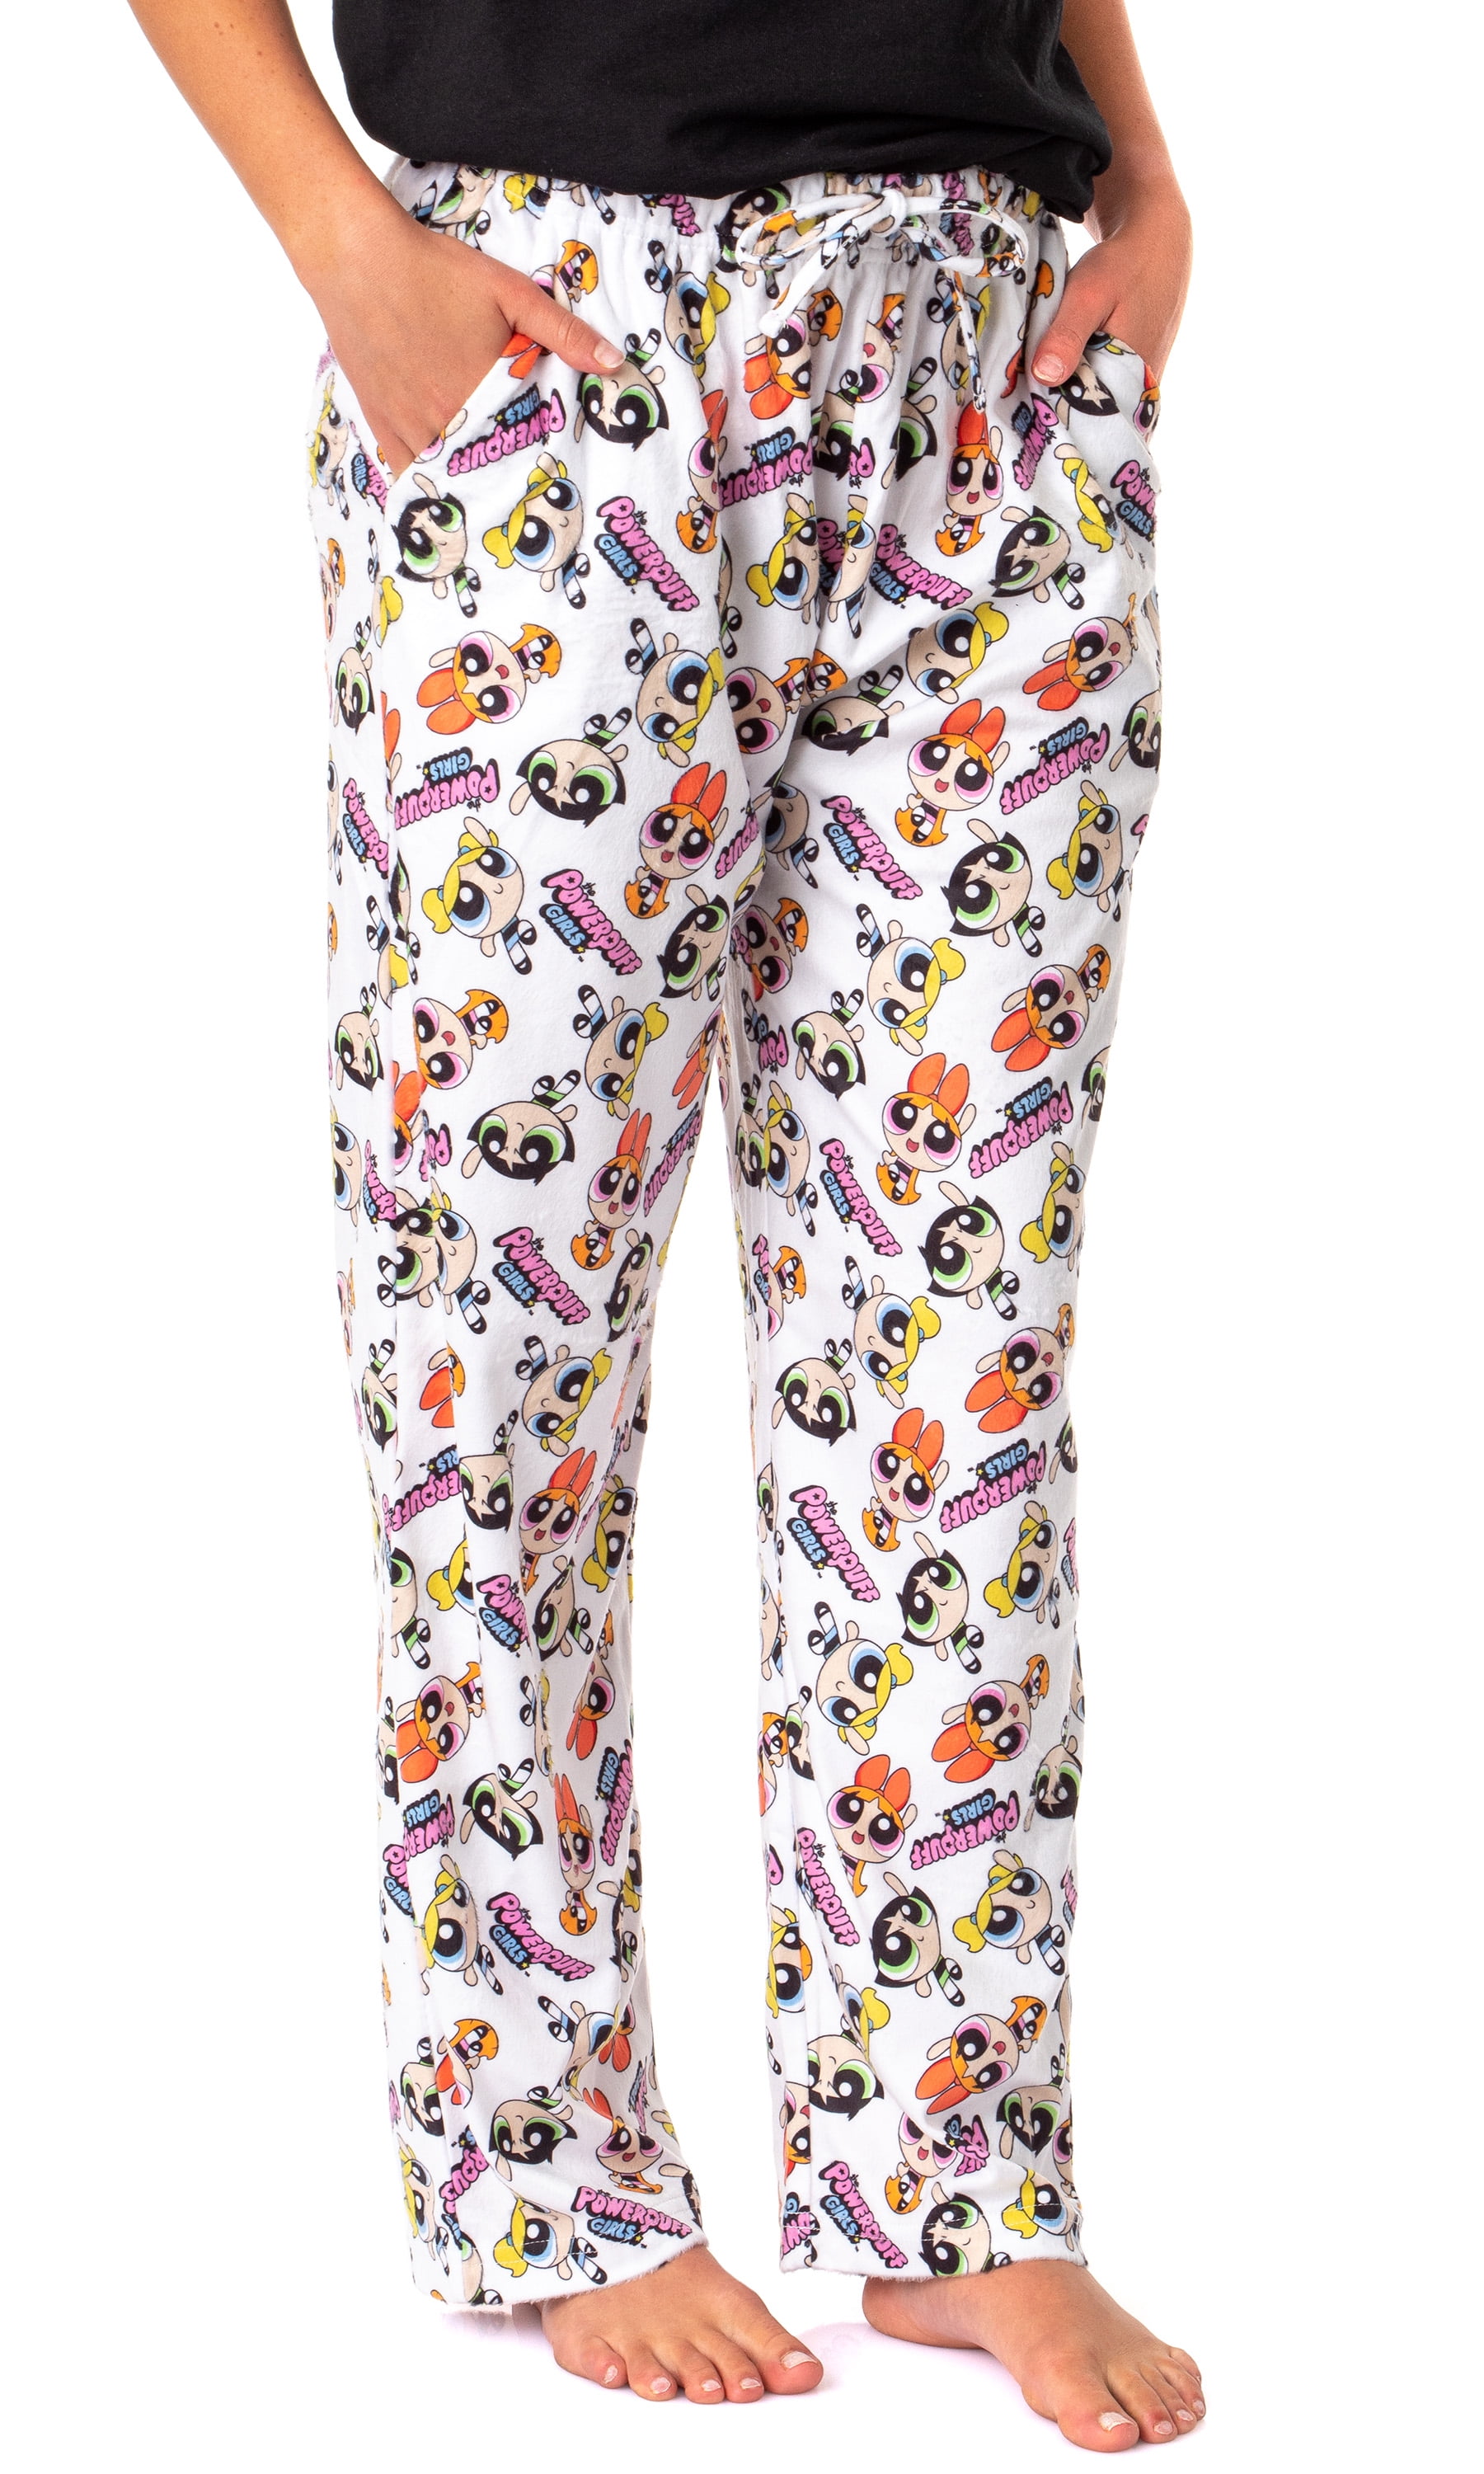 Night Wear Printed Girls Pajama Set, Size: S/M/L/Xl at Rs 900/set in Jaipur